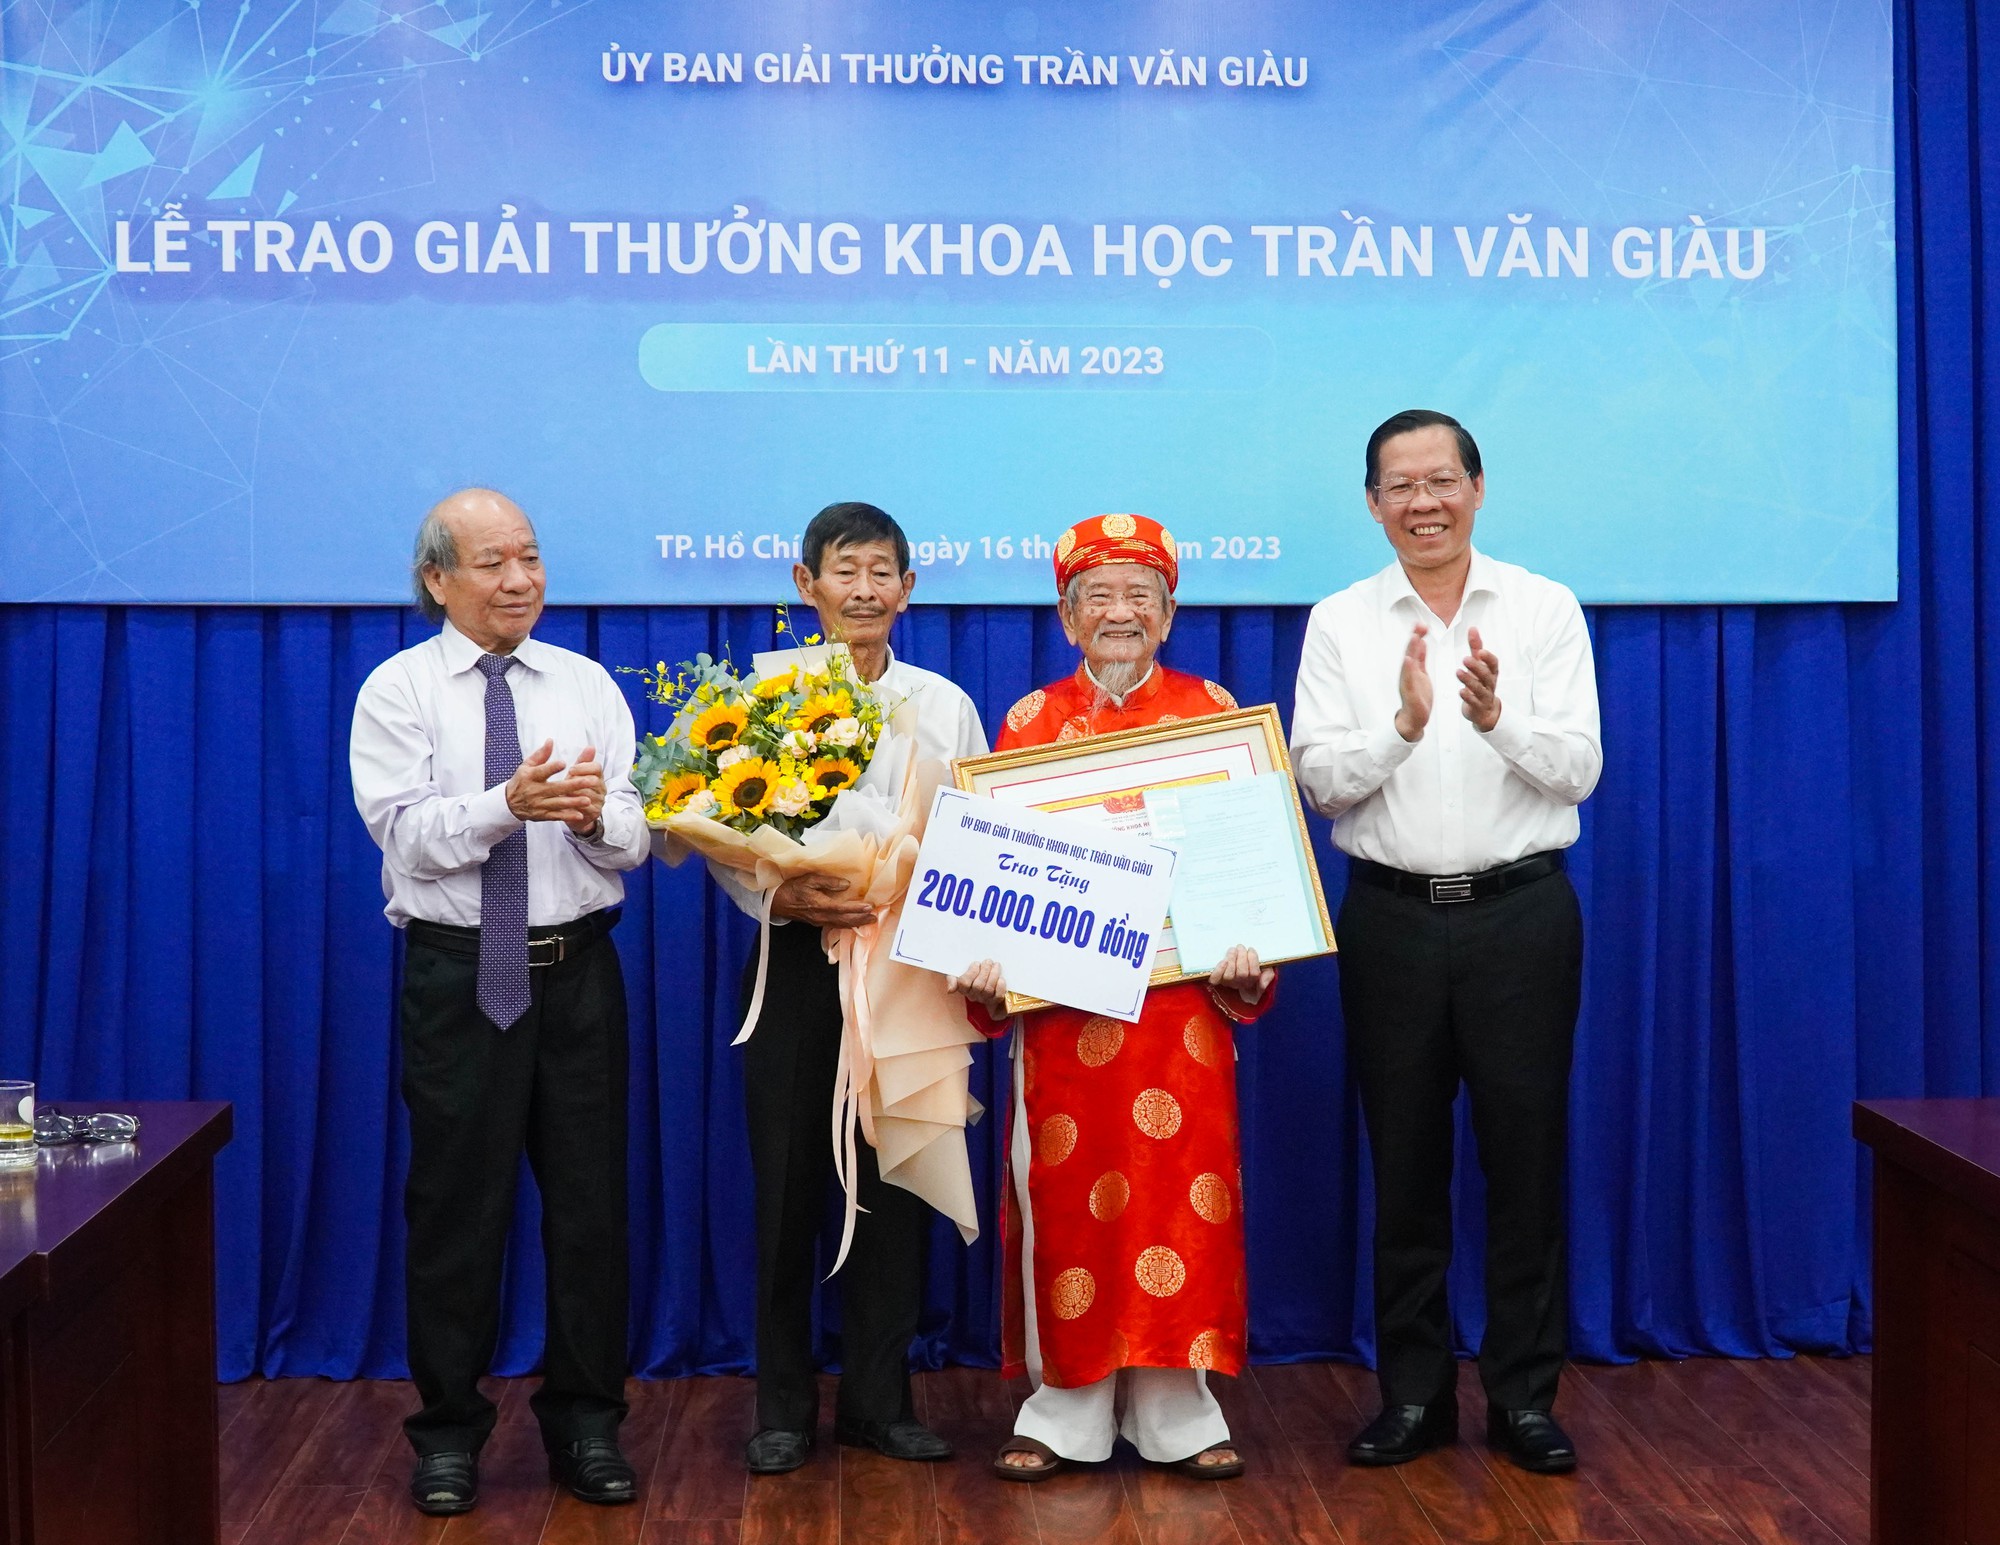 Nhà nghiên cứu Nguyễn Đình Tư nhận giải thưởng khoa học Trần Văn Giàu năm 2023 - Ảnh 4.